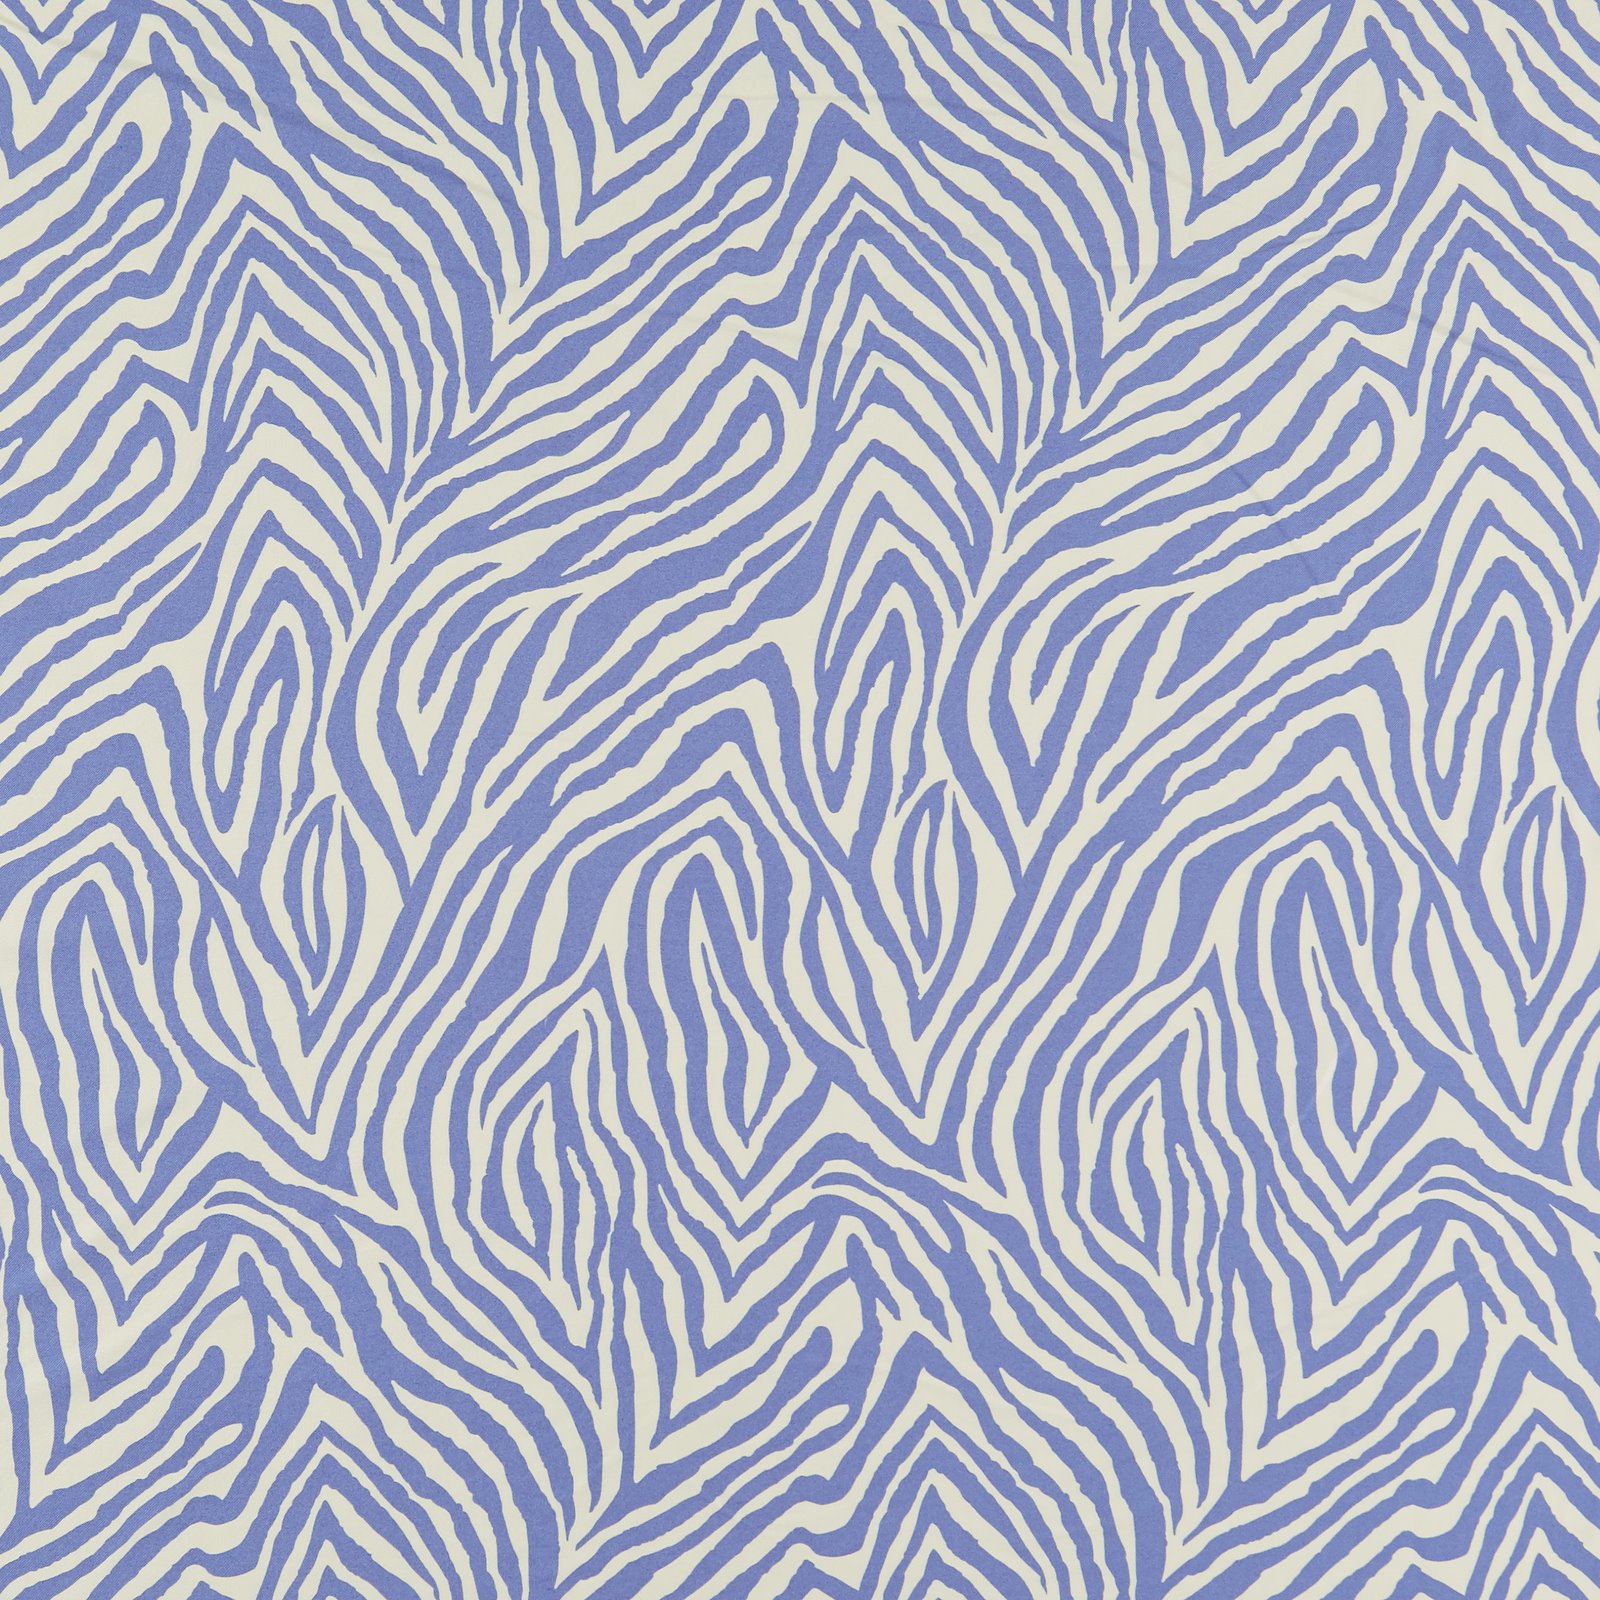 Vævet viscose twill hvid/blå zebra print 521140_pack_sp